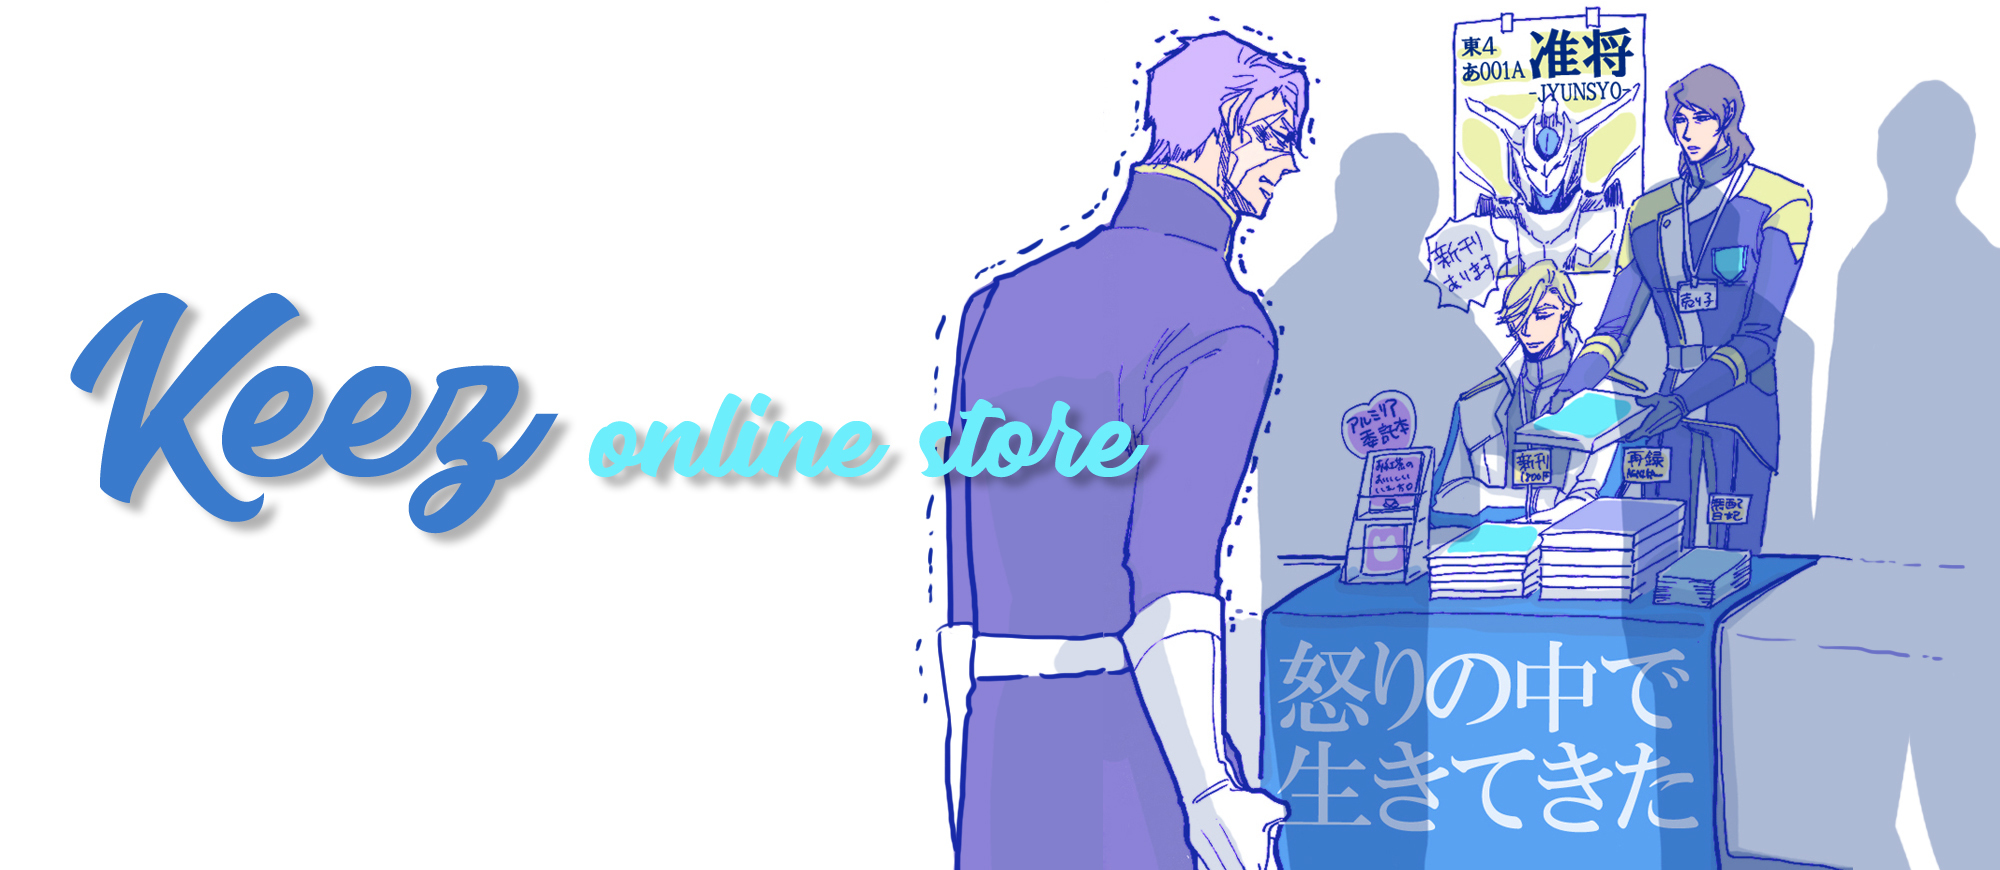 Keez online store